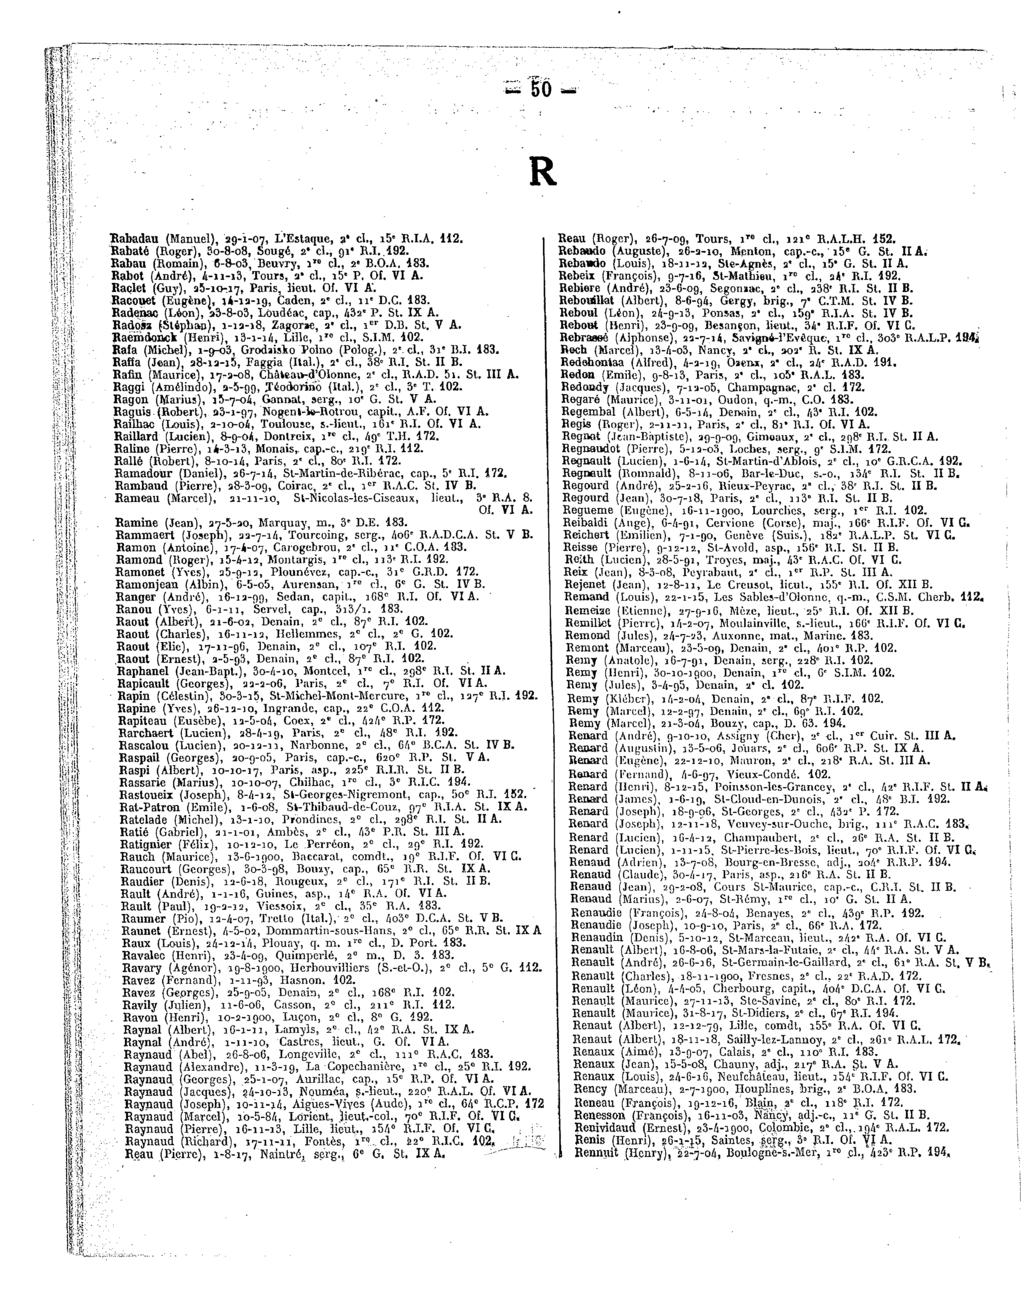 S t>0 - R Rabadau(Manuel), 29-1-07, L'Estaque, a*cl.,i5 R.I.A.112. Reau(Roger),26-7-09, Tours,iT"cl.,121 R.A.L.H. 152. Rabaté(Roger), 3o-8-o8, Sougé,2 cl.,91*r.l192.